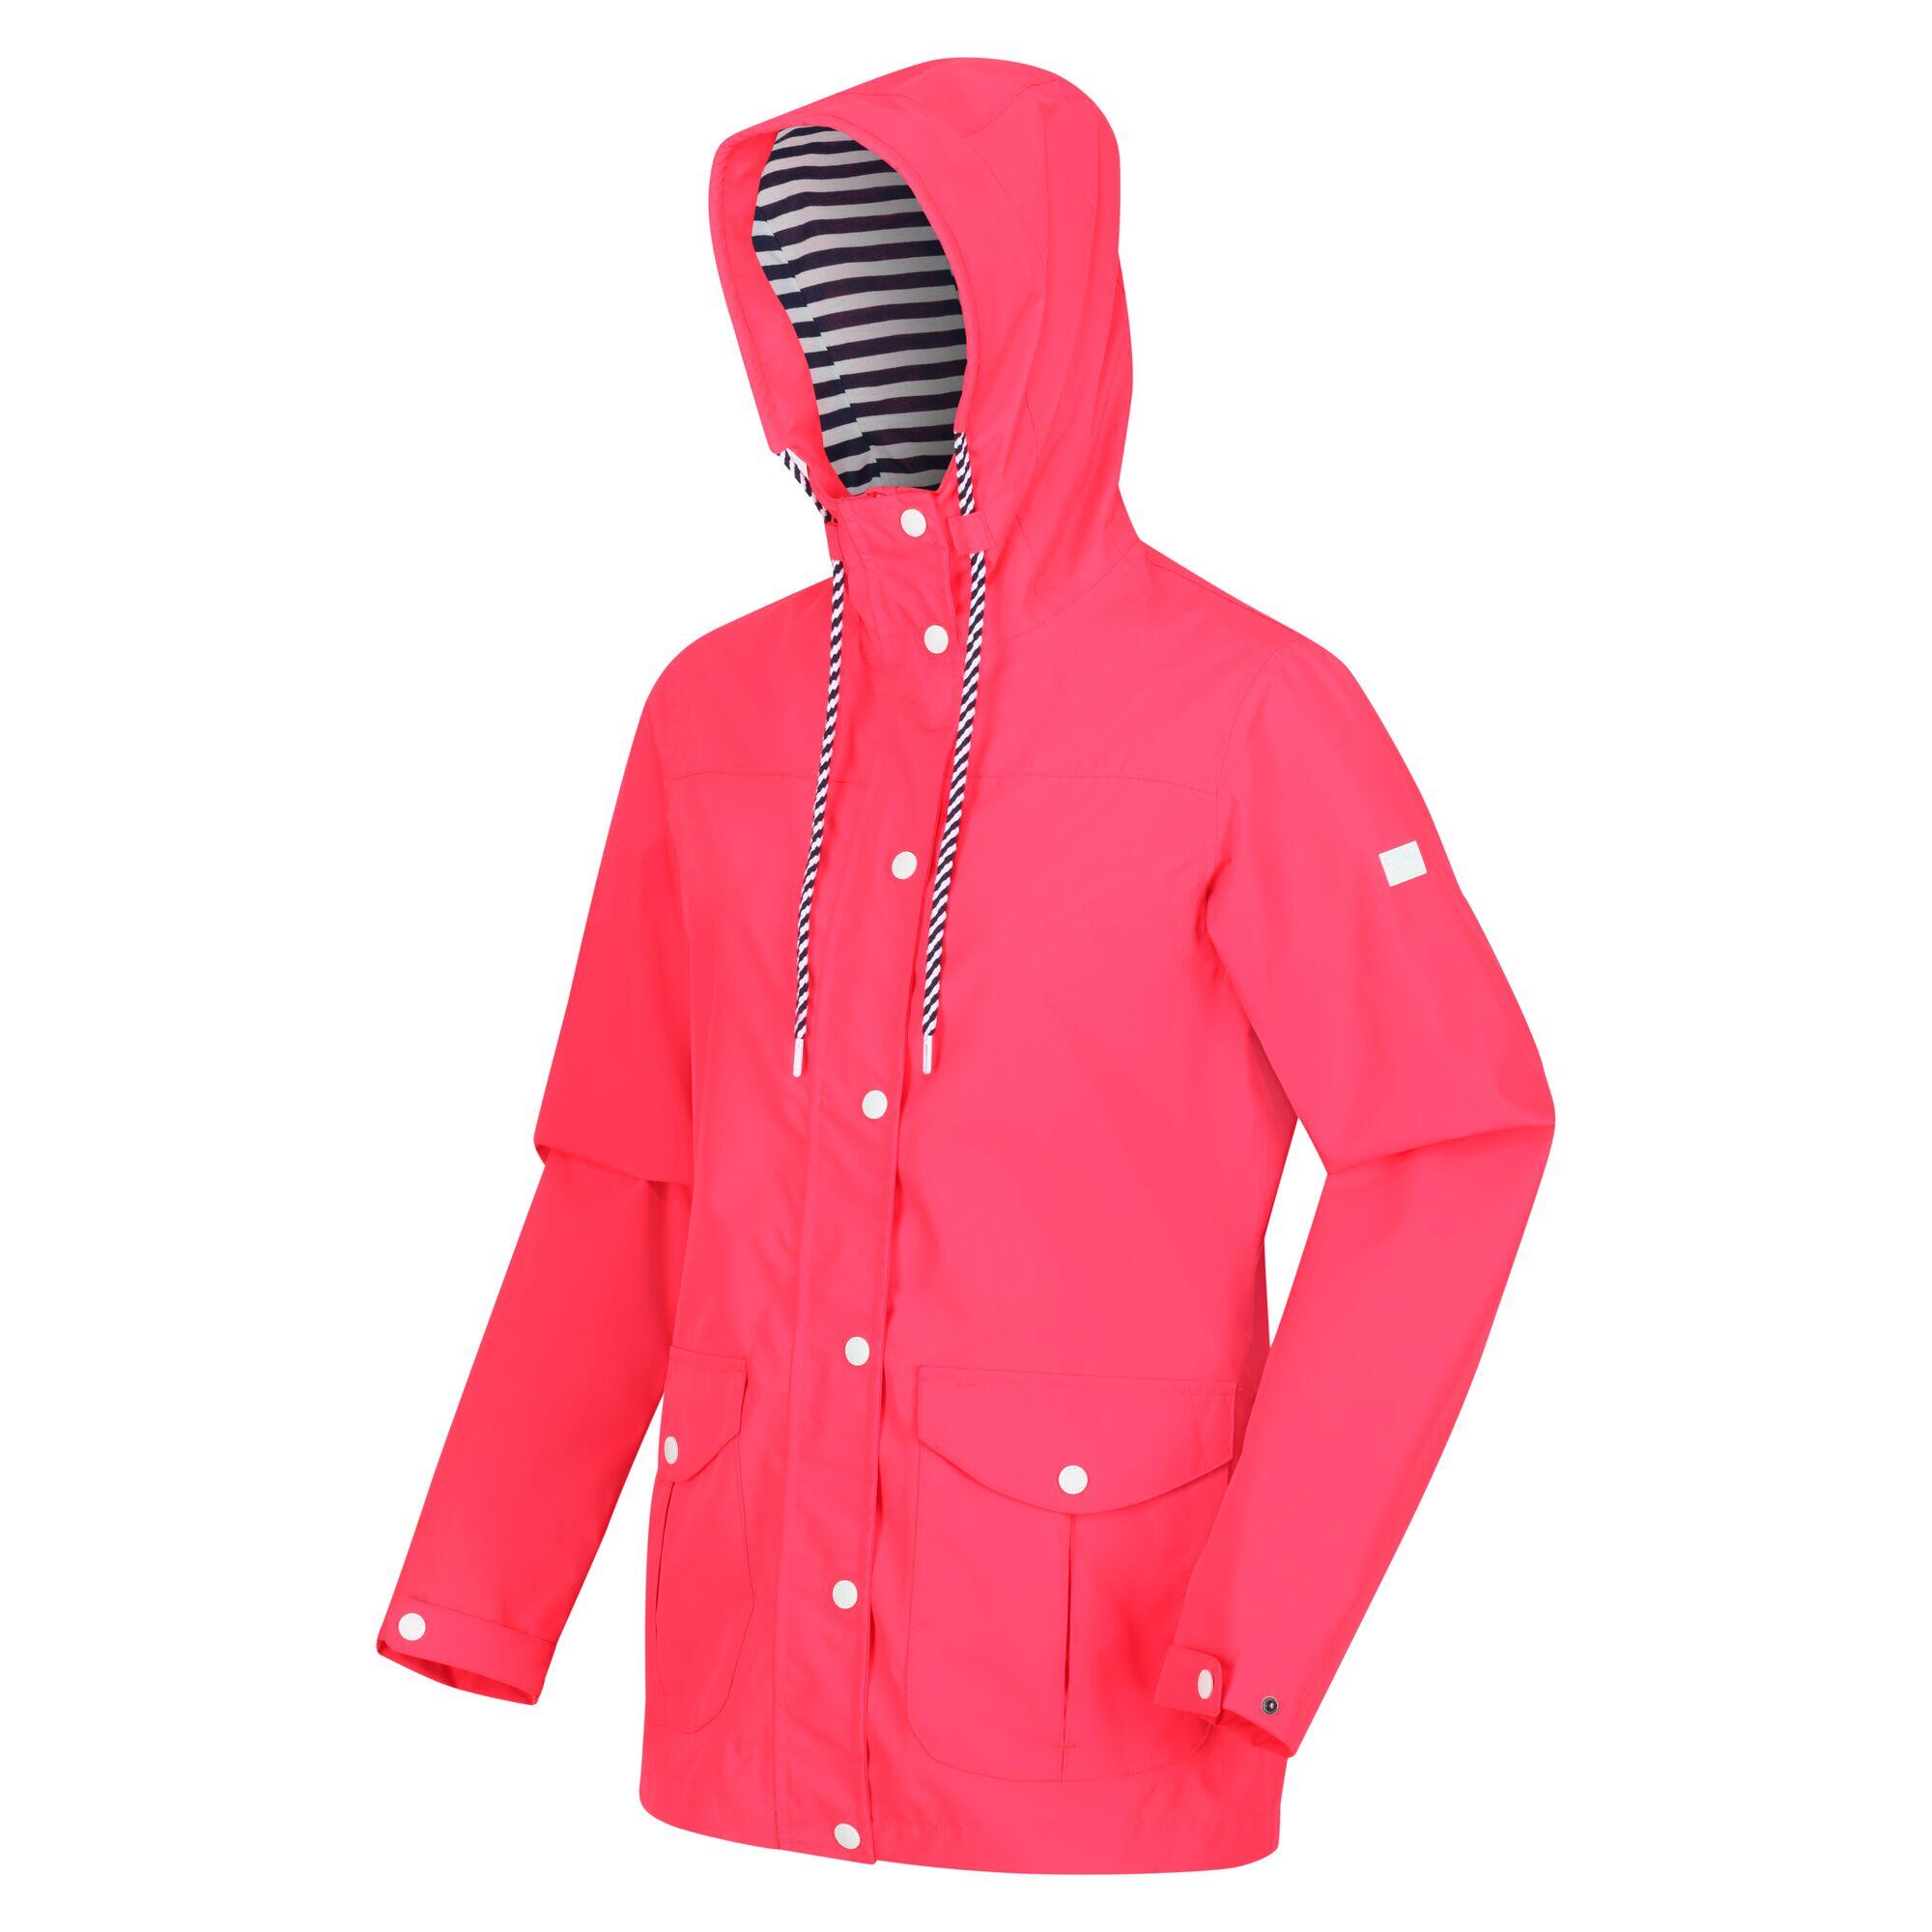 Bayarma Women's Walking Cotton Jacket - Neon Pink 5/6